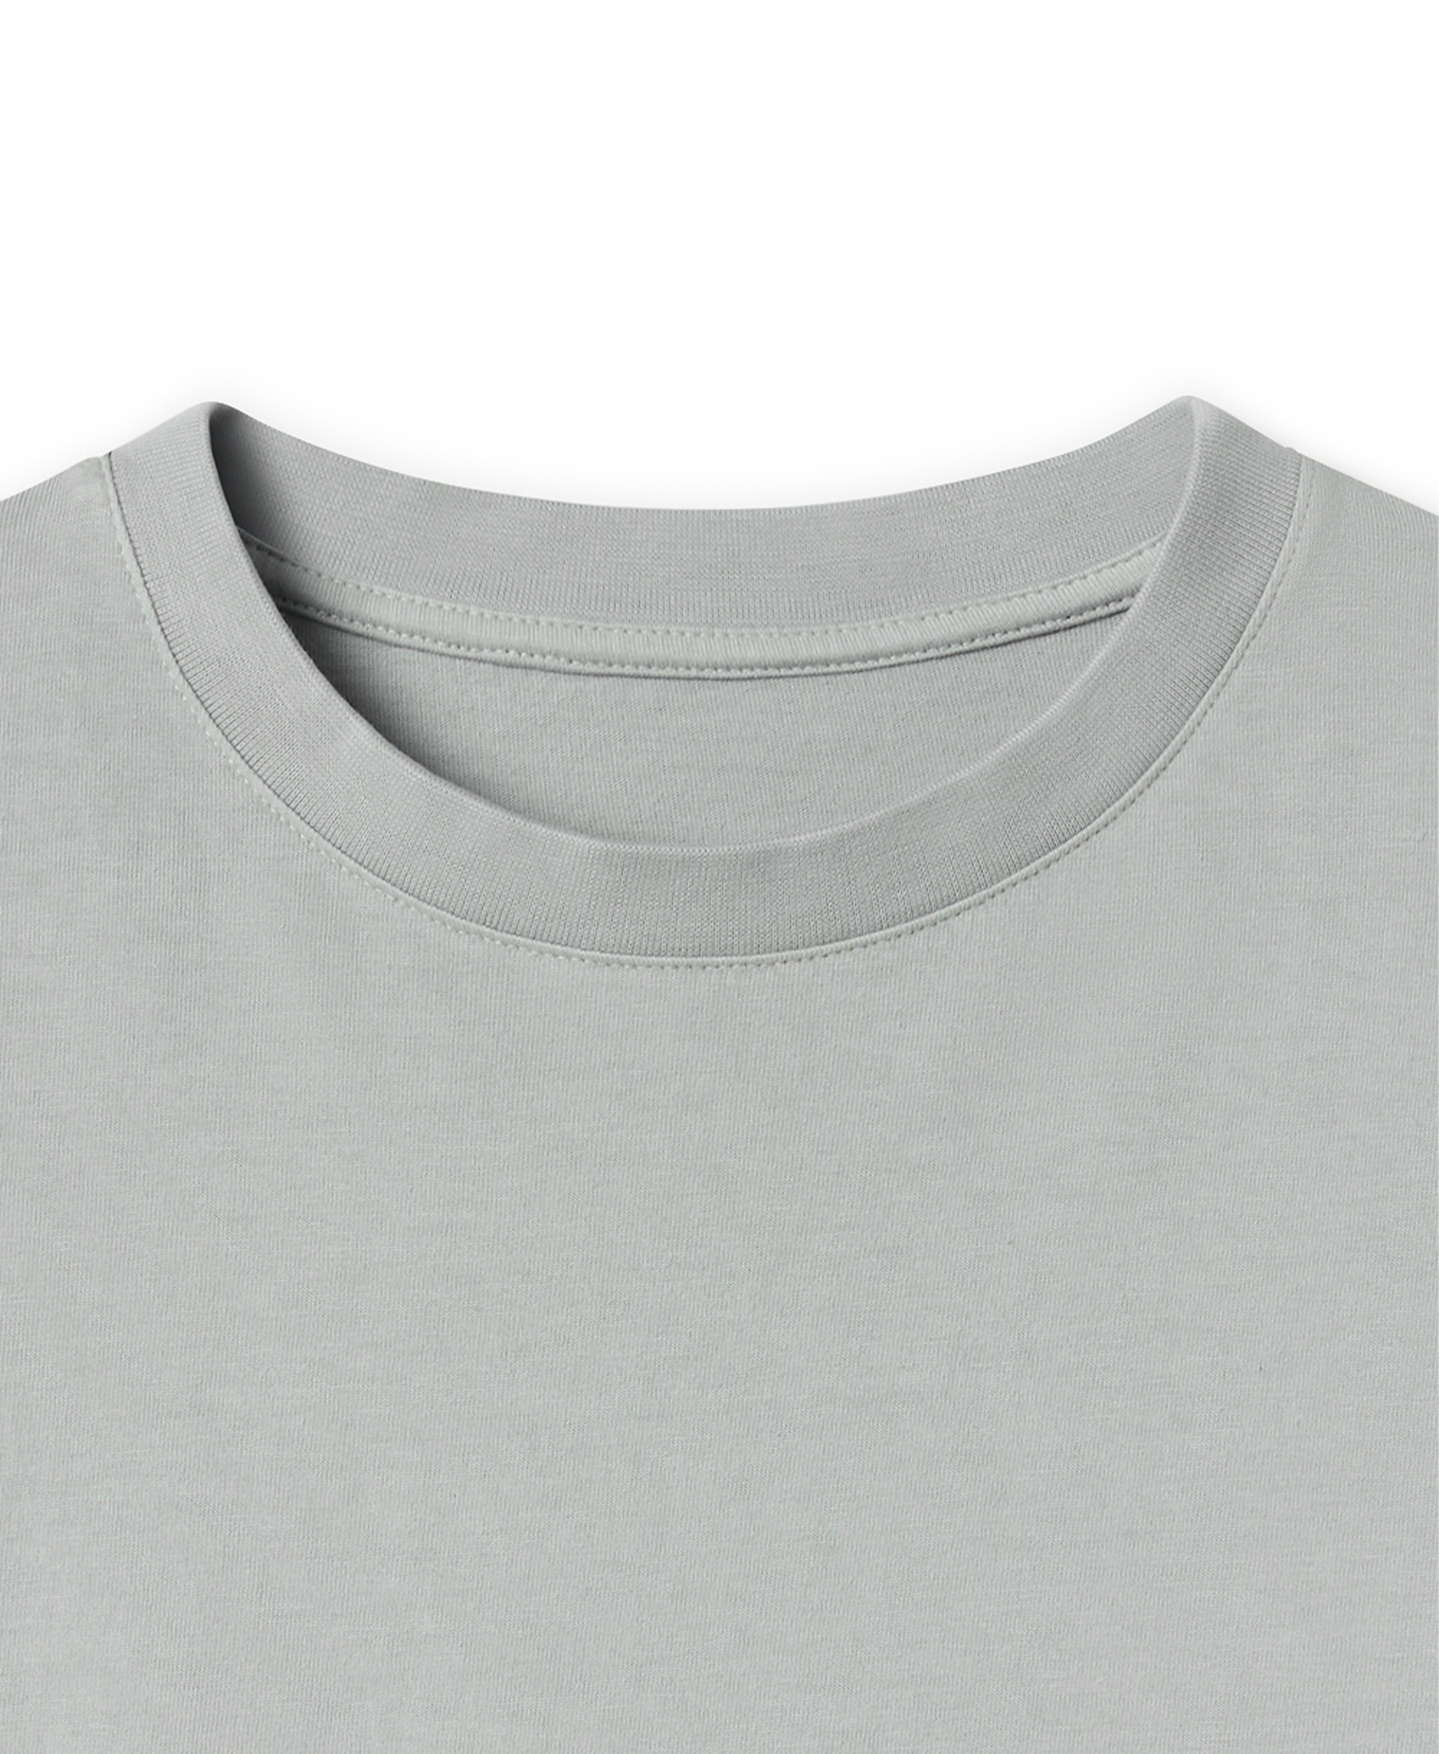 180 GSM 'Neutral Gray' T-Shirt